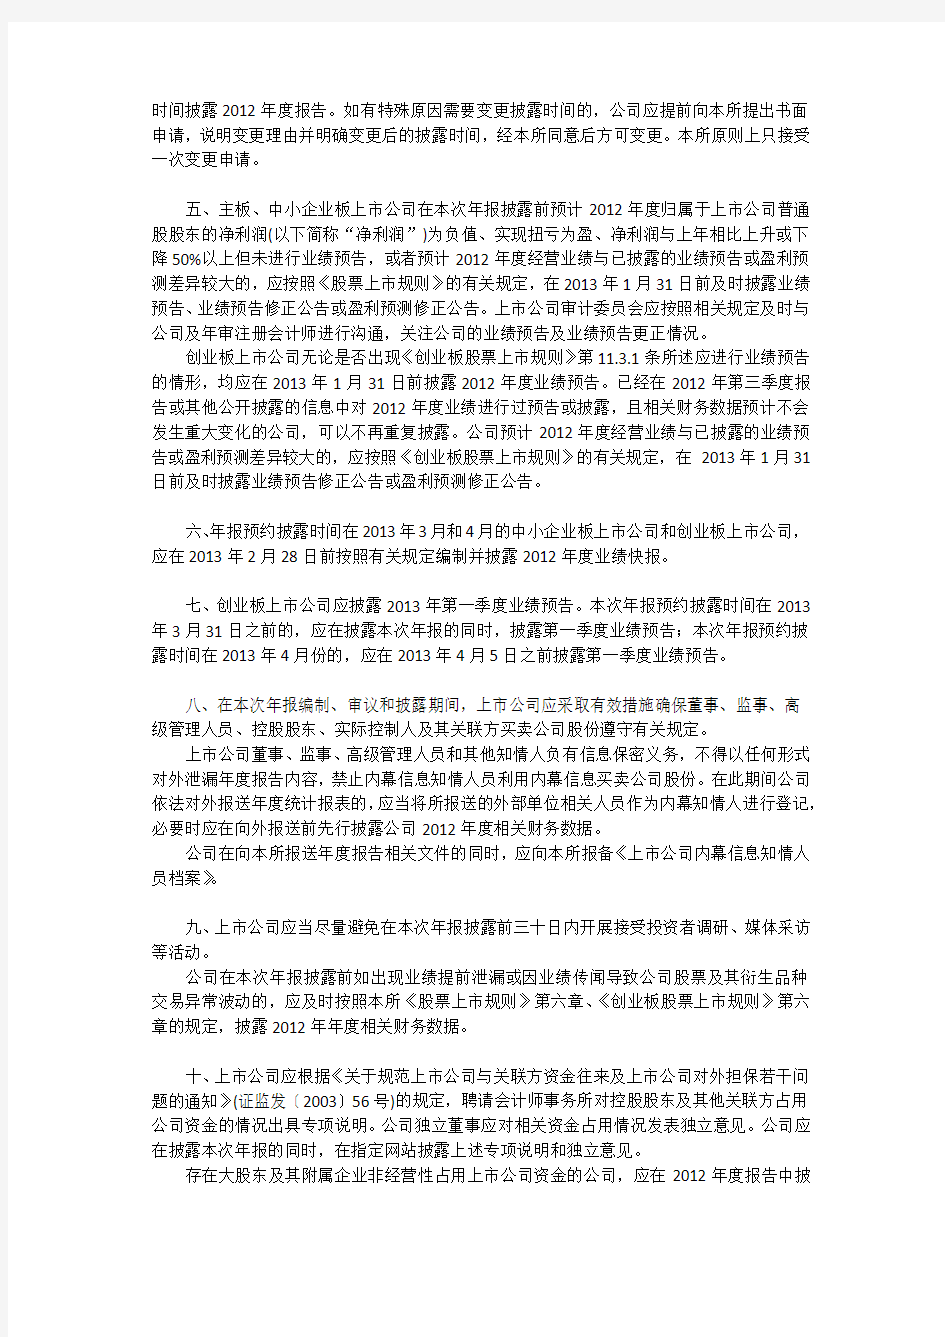 深圳证券交易所关于做好上市公司2012年年度报告披露工作的通知